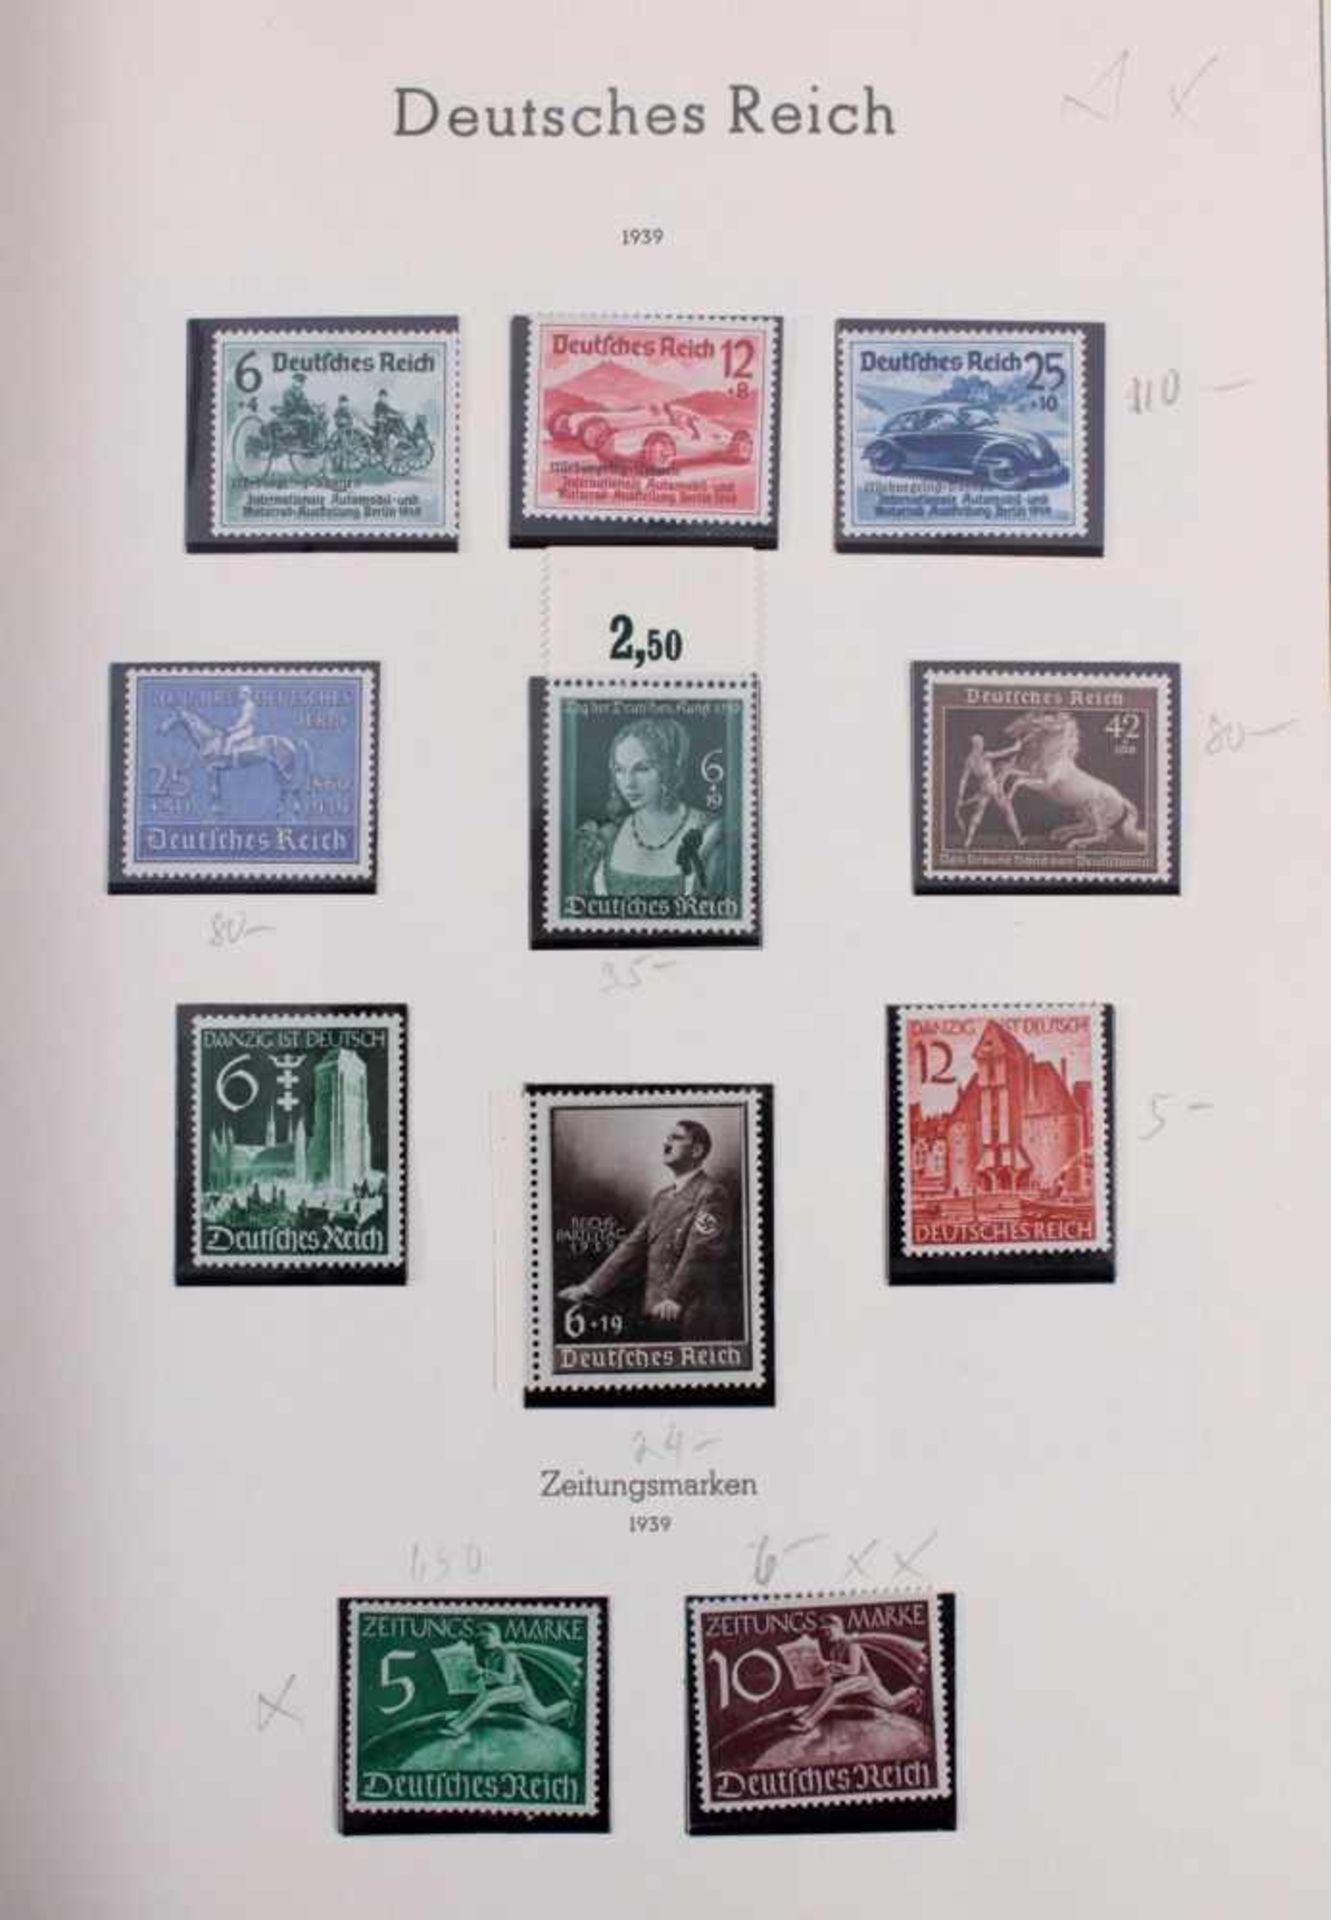 Sammlung Deutsches Reich 1933-1945 mit Nebengebieten, Postfrisch / ungebrauchtDeutsches Reich in den - Bild 21 aus 36